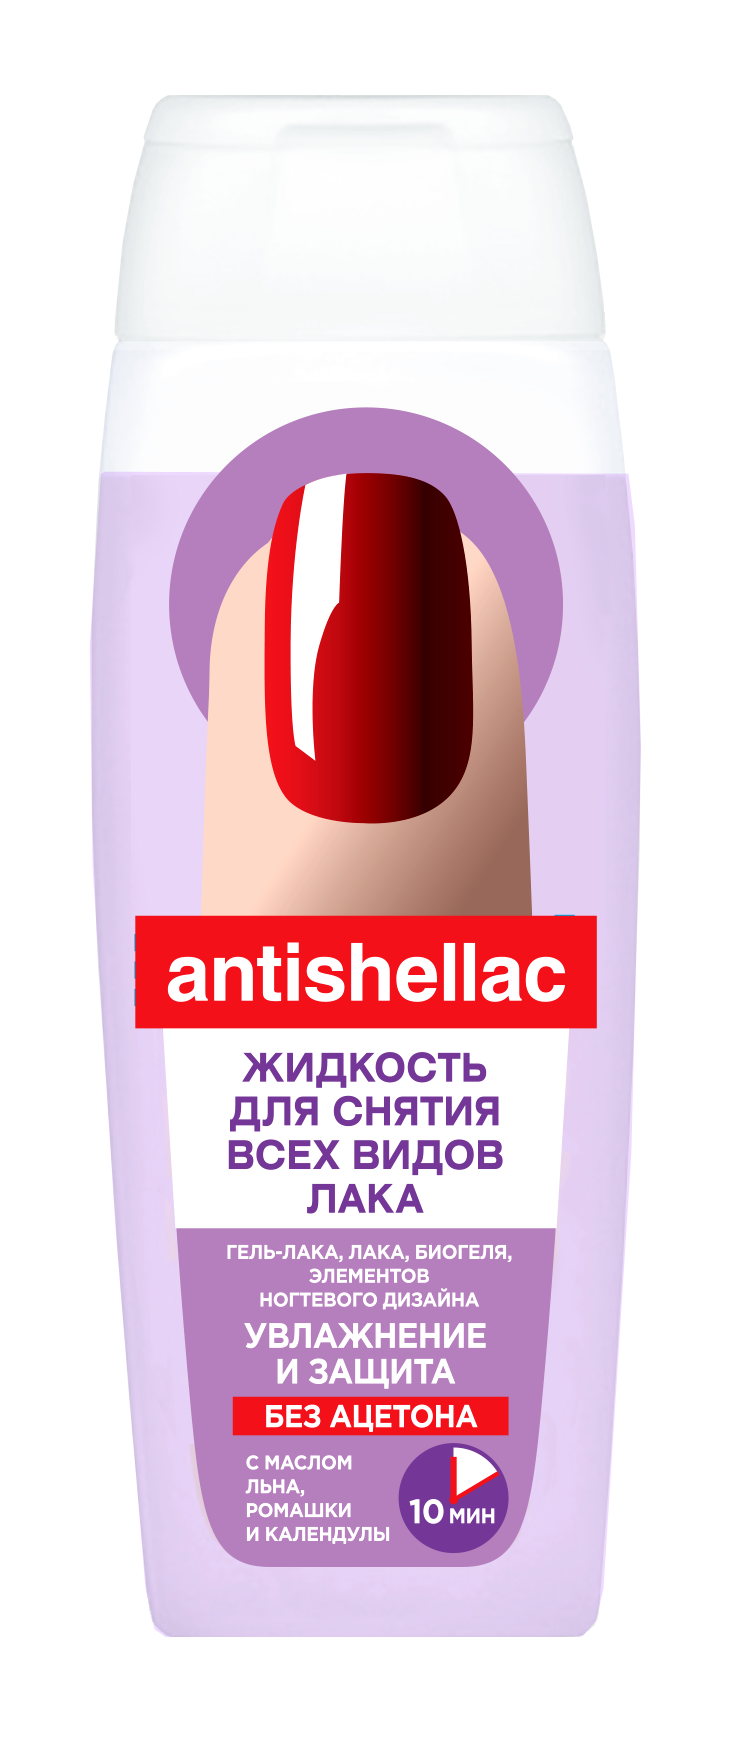 Средство для снятия гель-лака Antigellac без ацетона увлажнение и защита 110мл - в интернет-магазине tut-beauty.by